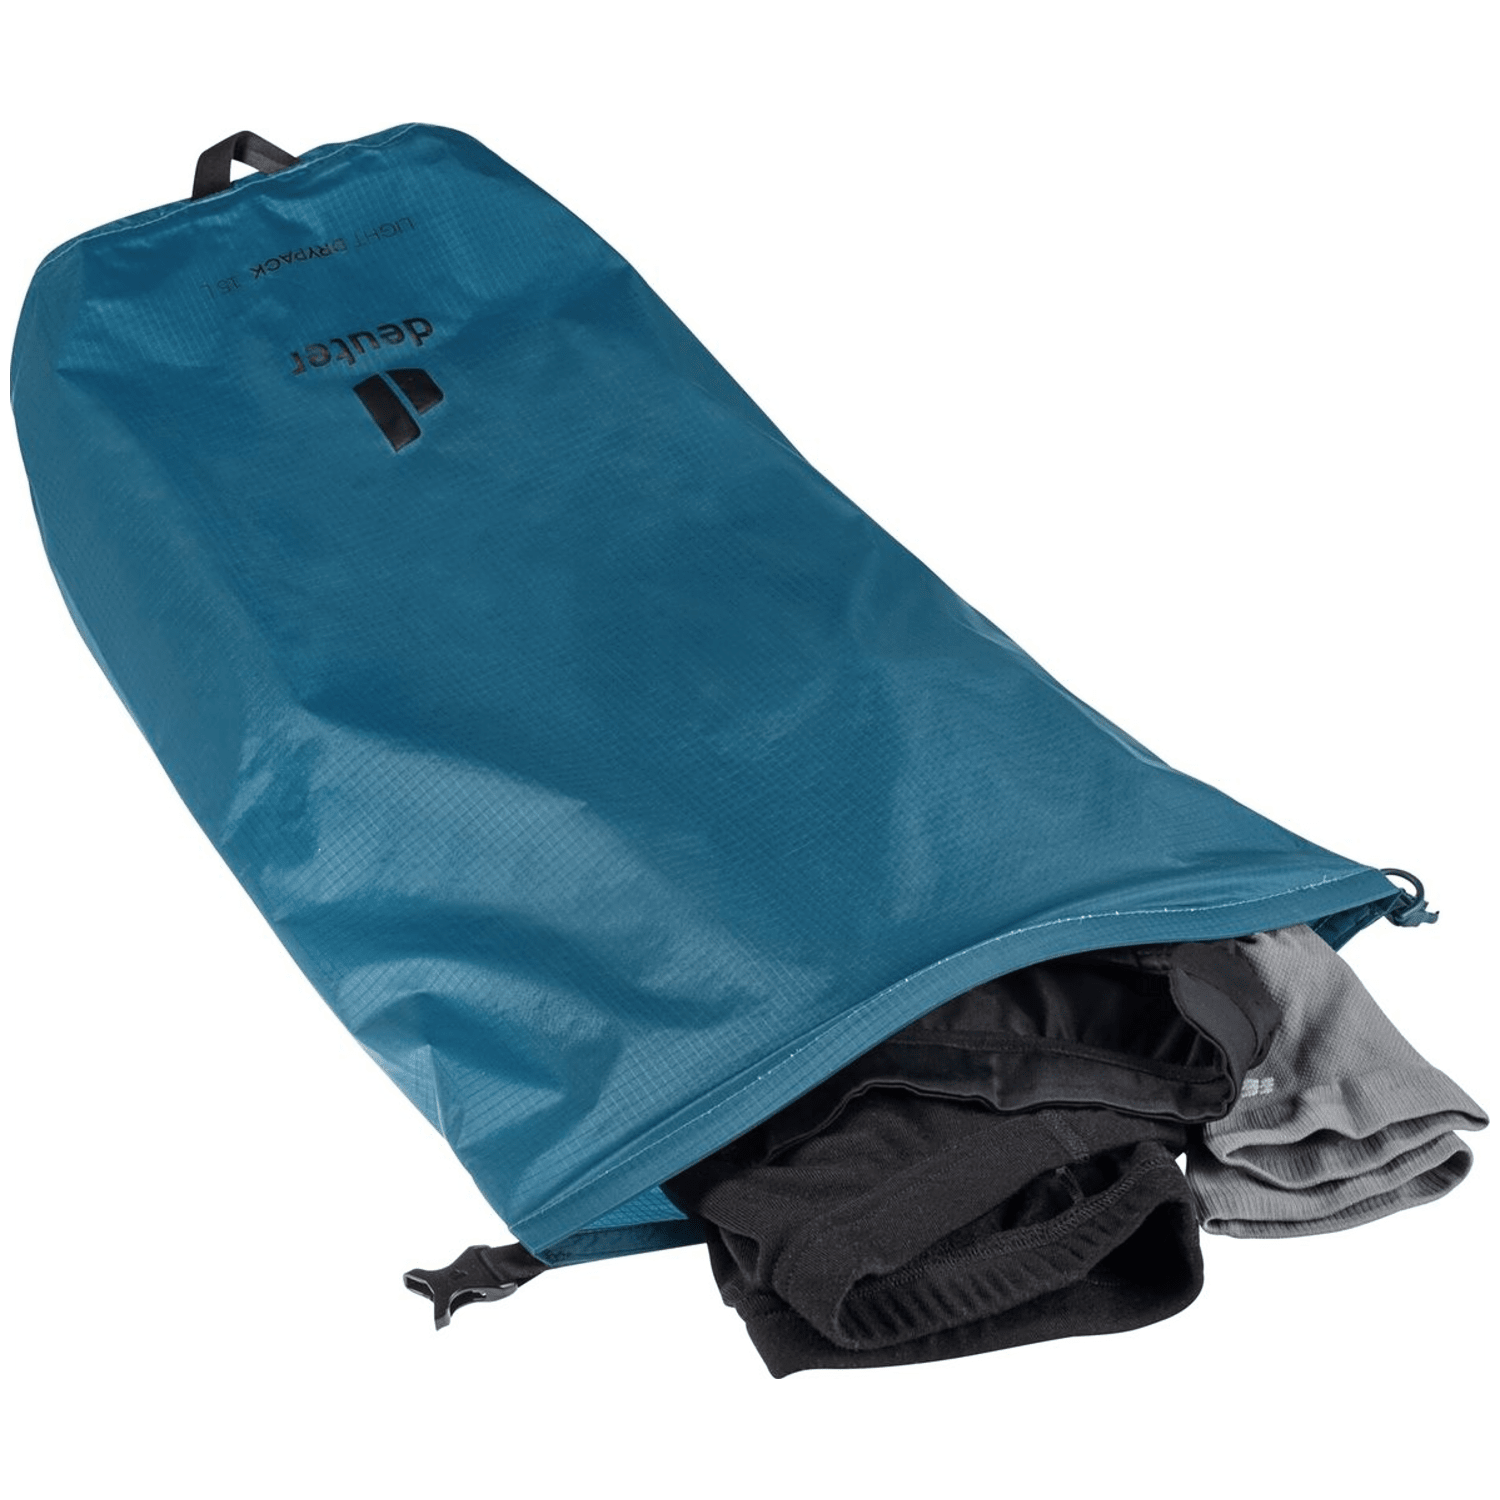 Deuter Light Drypack 15 Beutel / Kleintasche